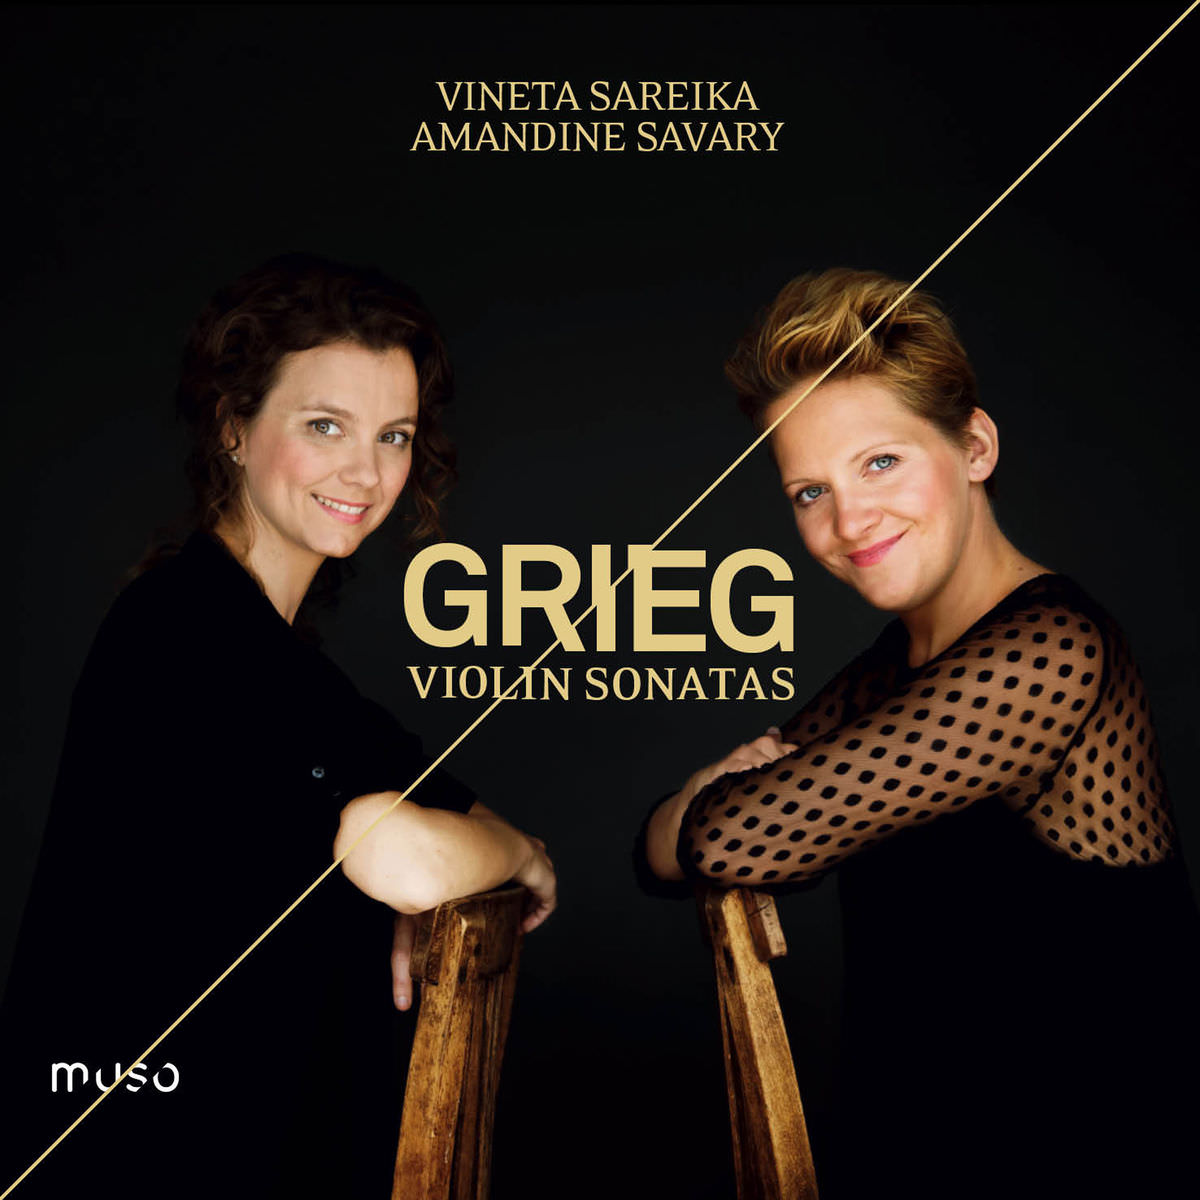 Vineta Sareika & Amandine Savary – Edvard Grieg: Violin Sonatas (2018) [FLAC 24bit/96kHz]